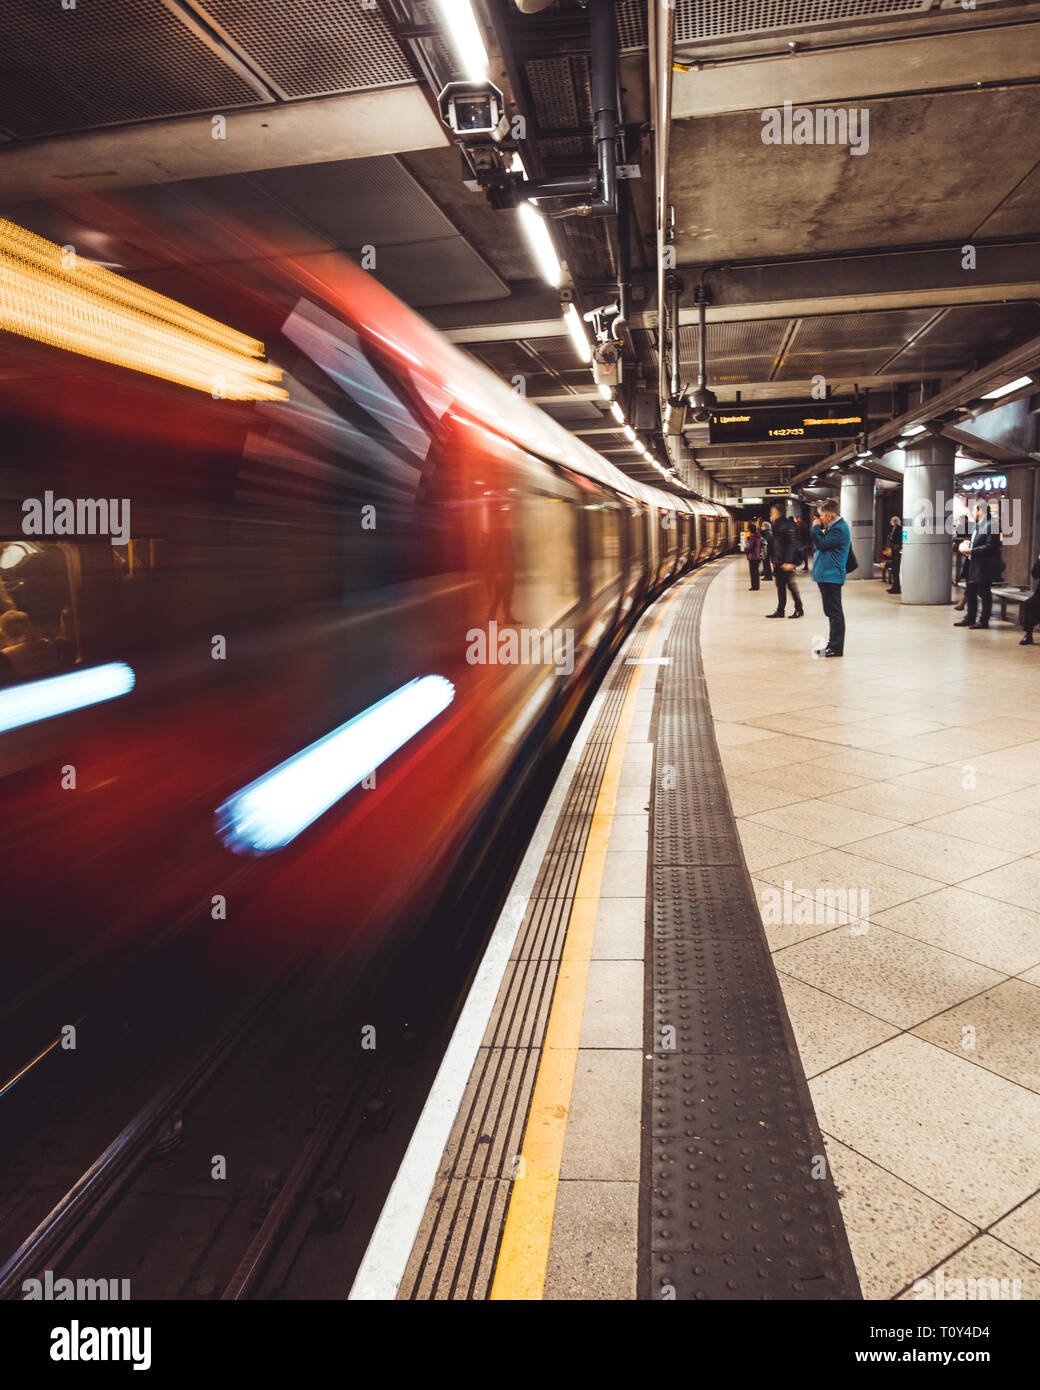 Londra - MARZO 20, 2019: treno arrivando alla piattaforma alla stazione della metropolitana di Westminster a Londra Foto Stock